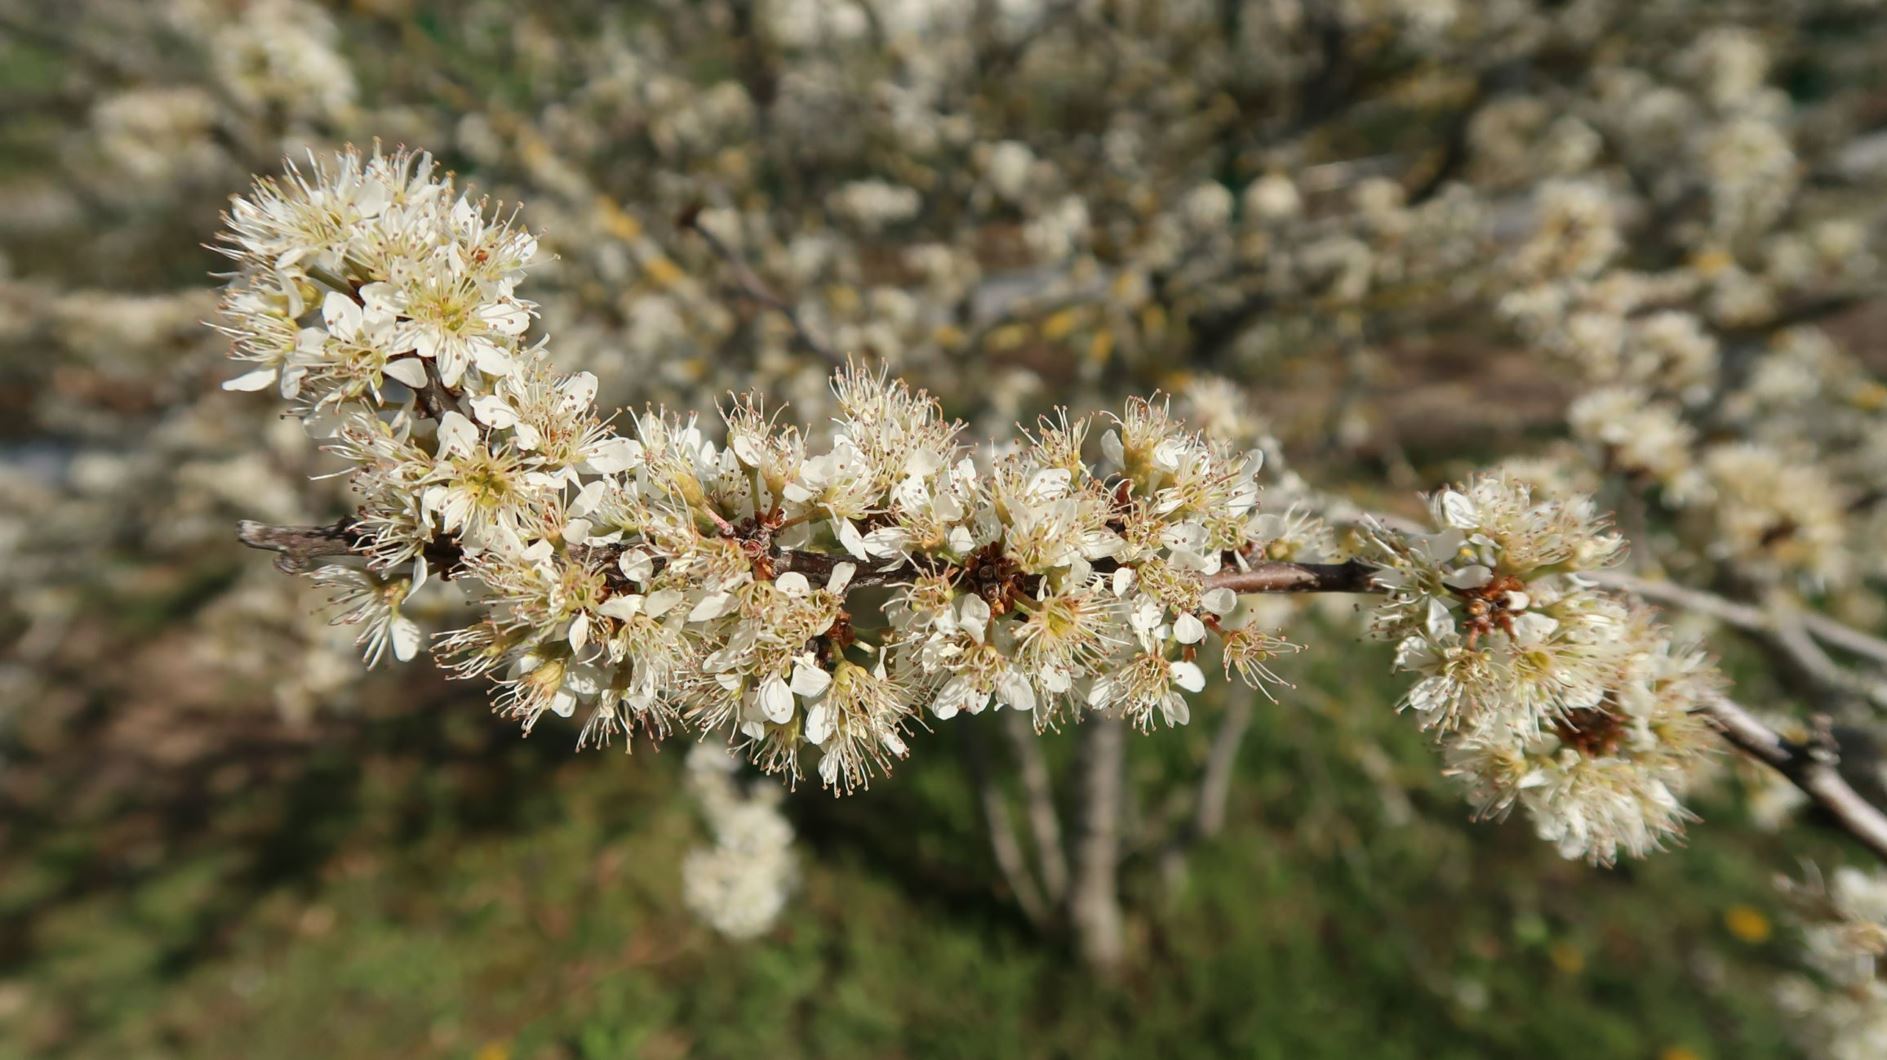 Prunus spinosa - Gewöhnliche Schlehe, blackthorn, sloe